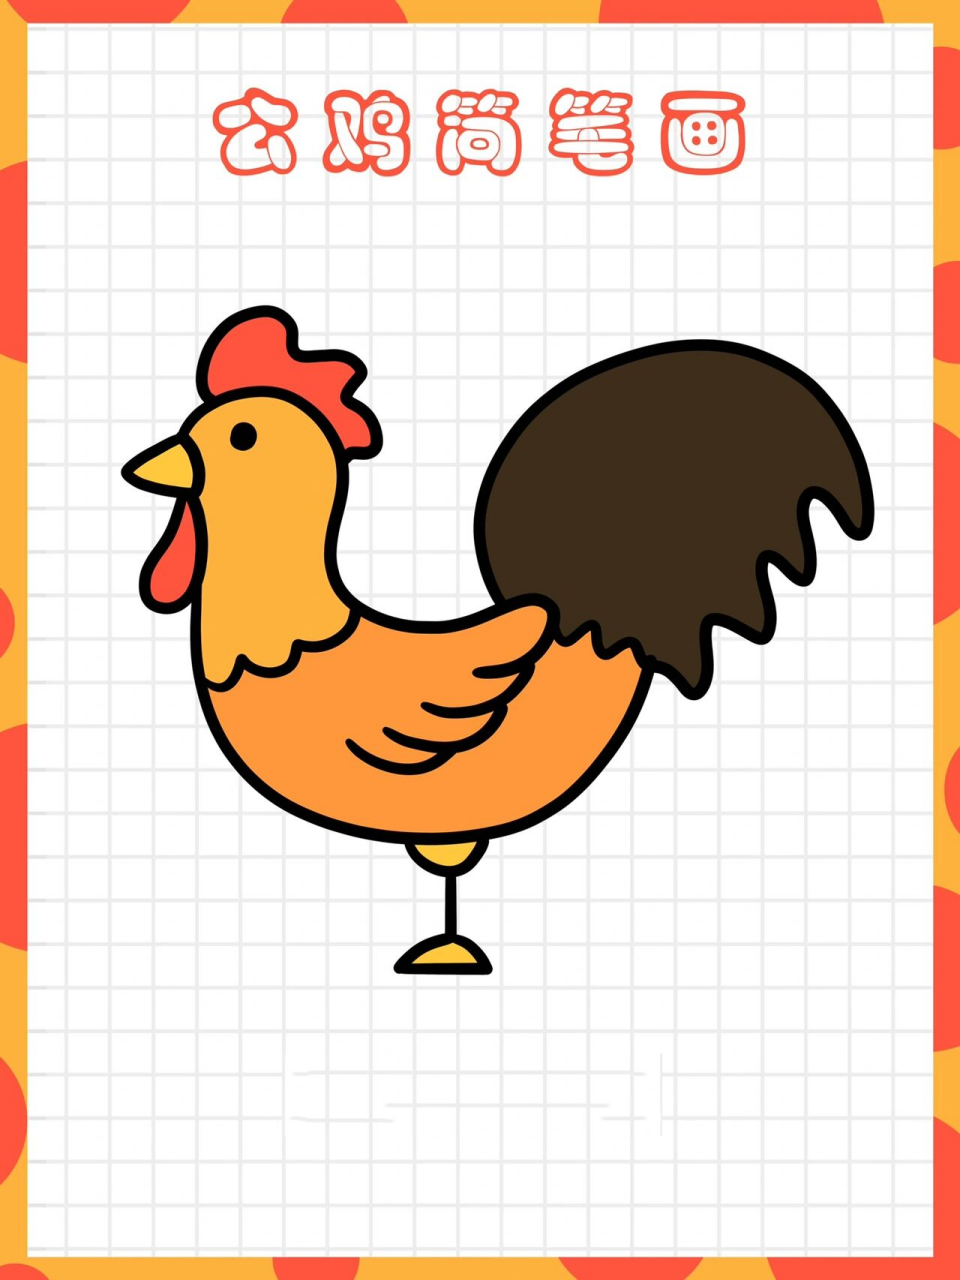 画鸡的简笔画 简单图片